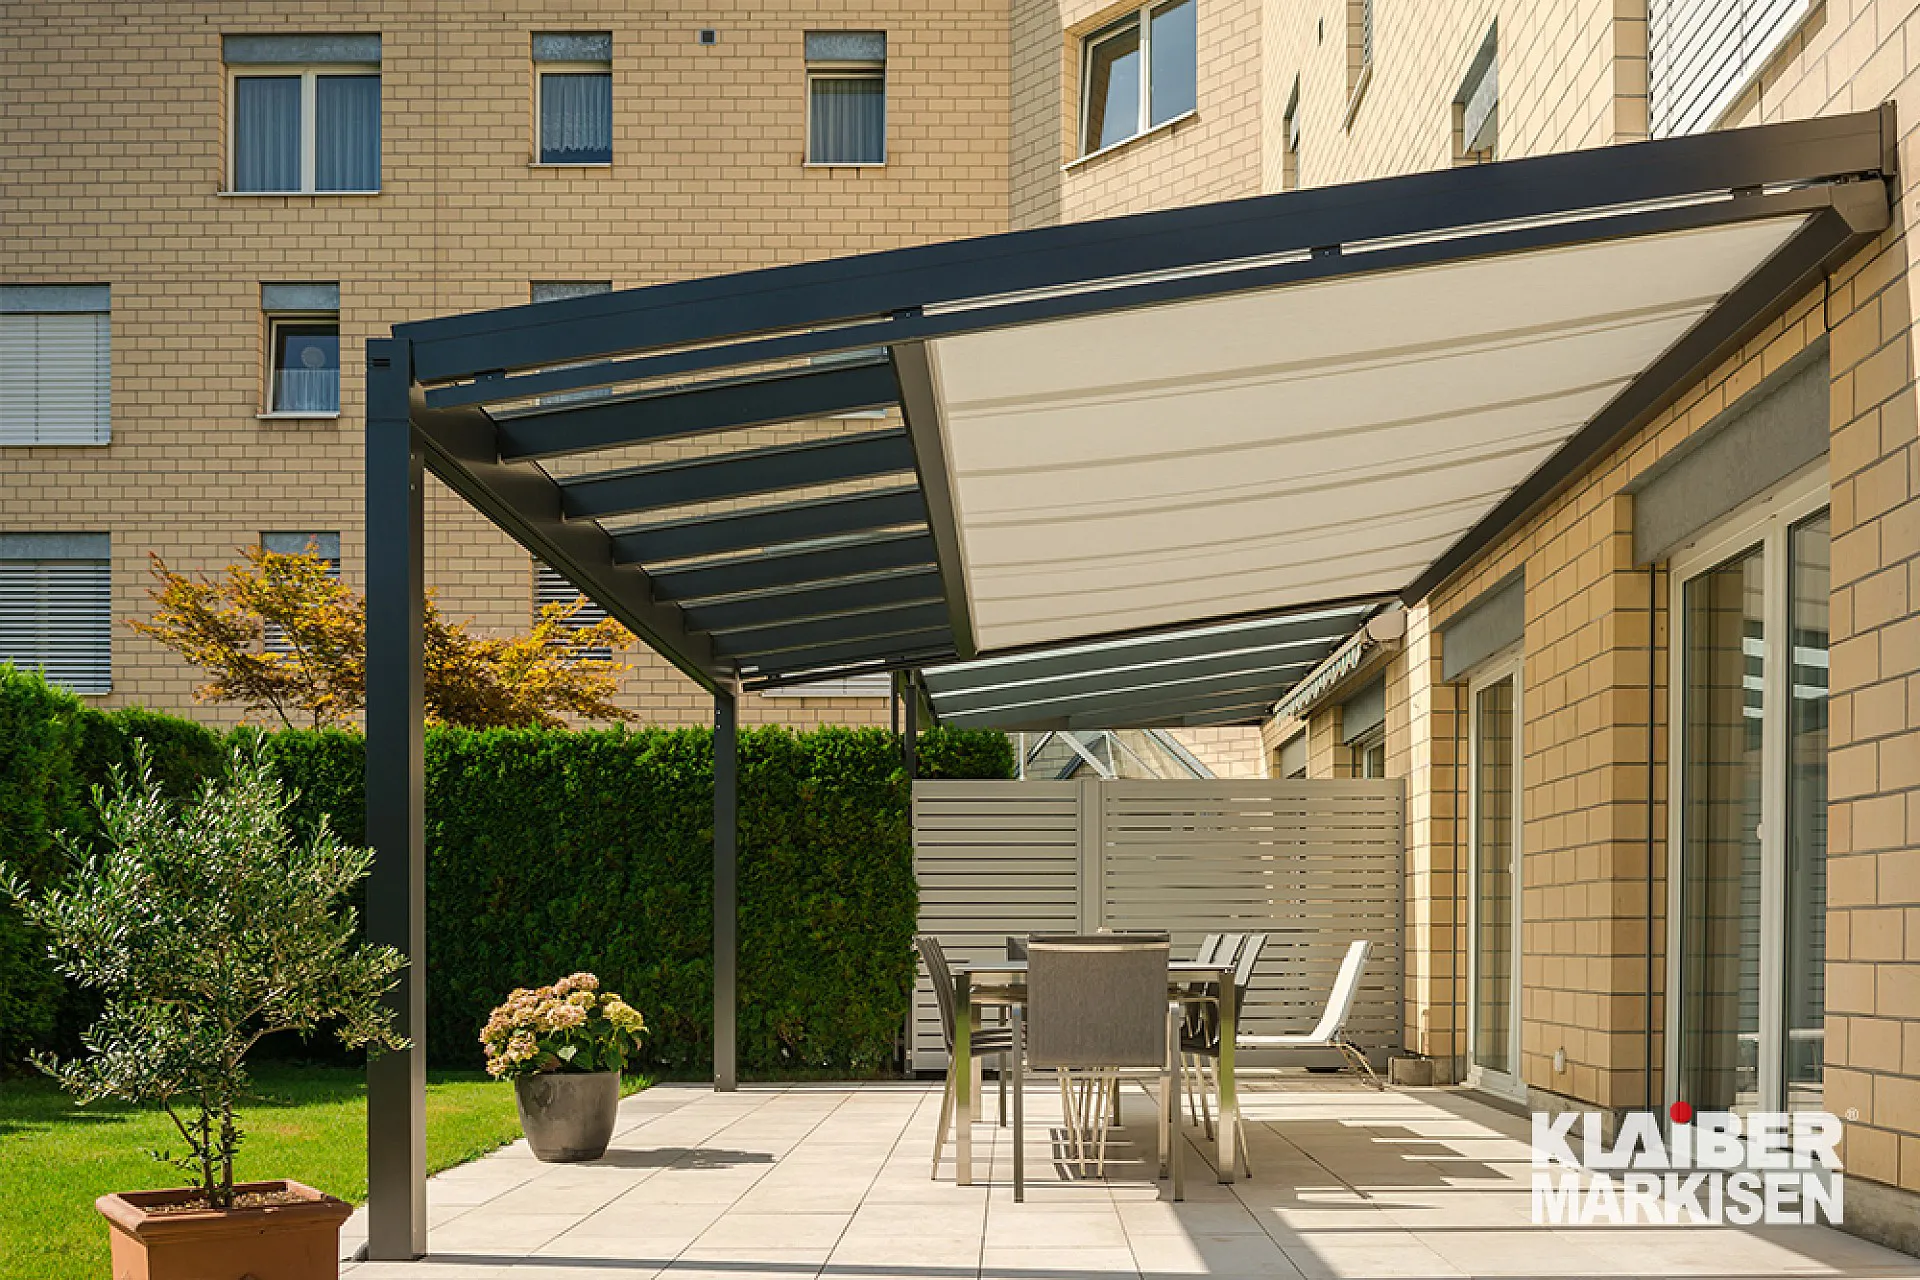 Wintergartenbeschattung, Unterglasmarkise. Ein Wirkungsvoller Sonnenschutz für Glasdächer. Farbe: beige, anthrazit. Modell: KLAIBER Arnex PS2500